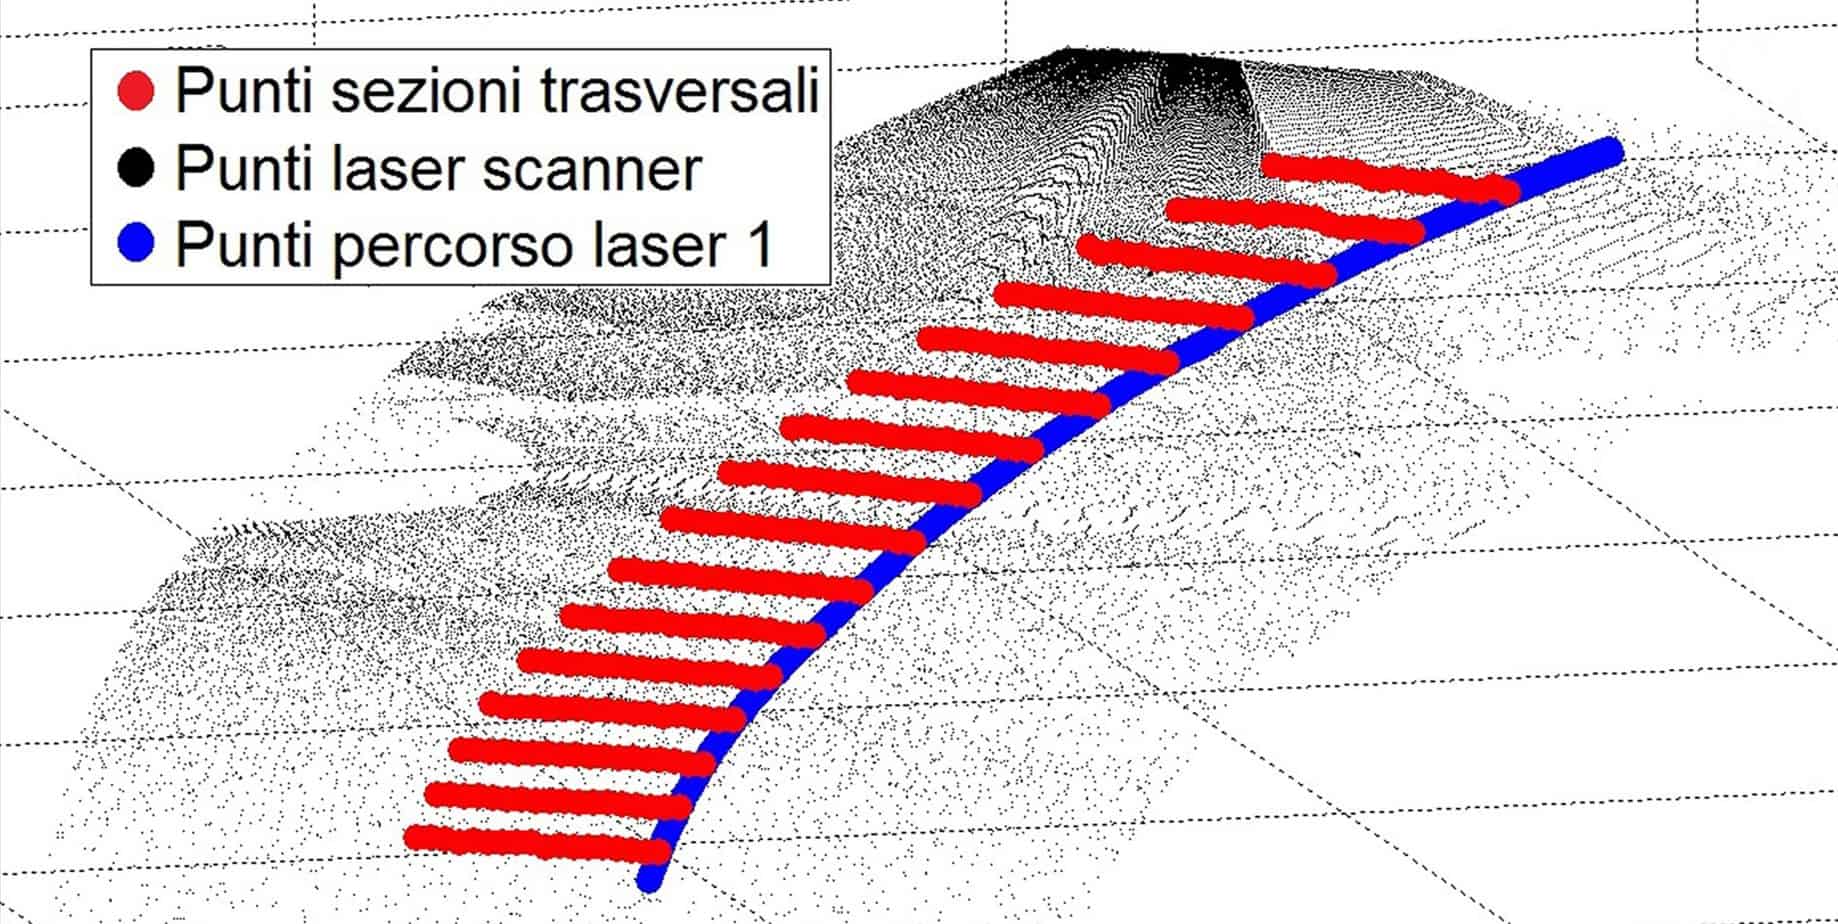 L’esempio grafico di estrazione dei dieci profili trasversali ottenuti combinando la nuvola di punti georeferenziata, acquisita tramite rilievo laser scanner, con il percorso GPS dei dieci laser